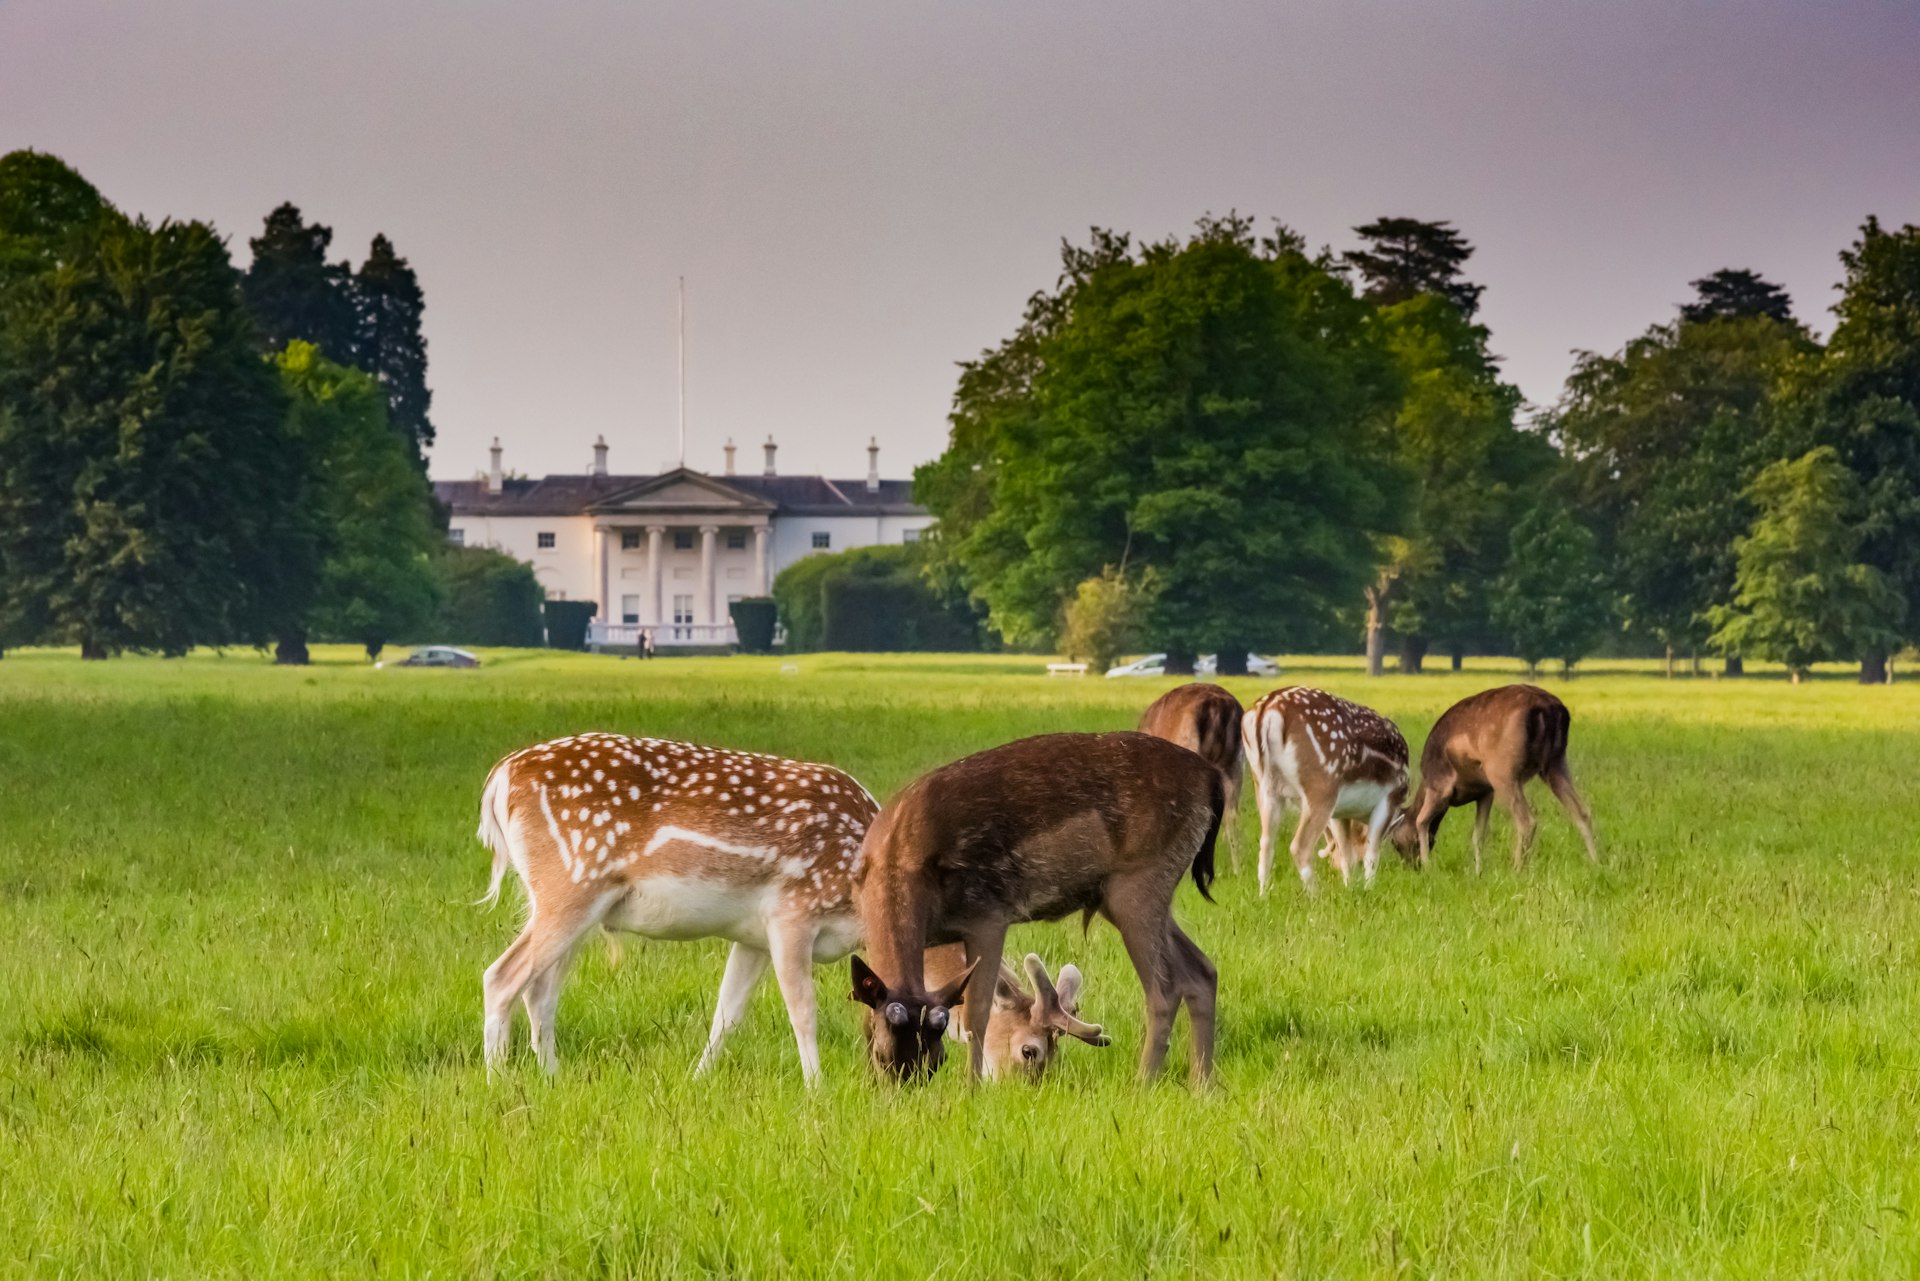 Deer graze on a lawn in the Phoenix Park, Dublin, in front of the Irish President’s residence, Áras an Uachtaráin